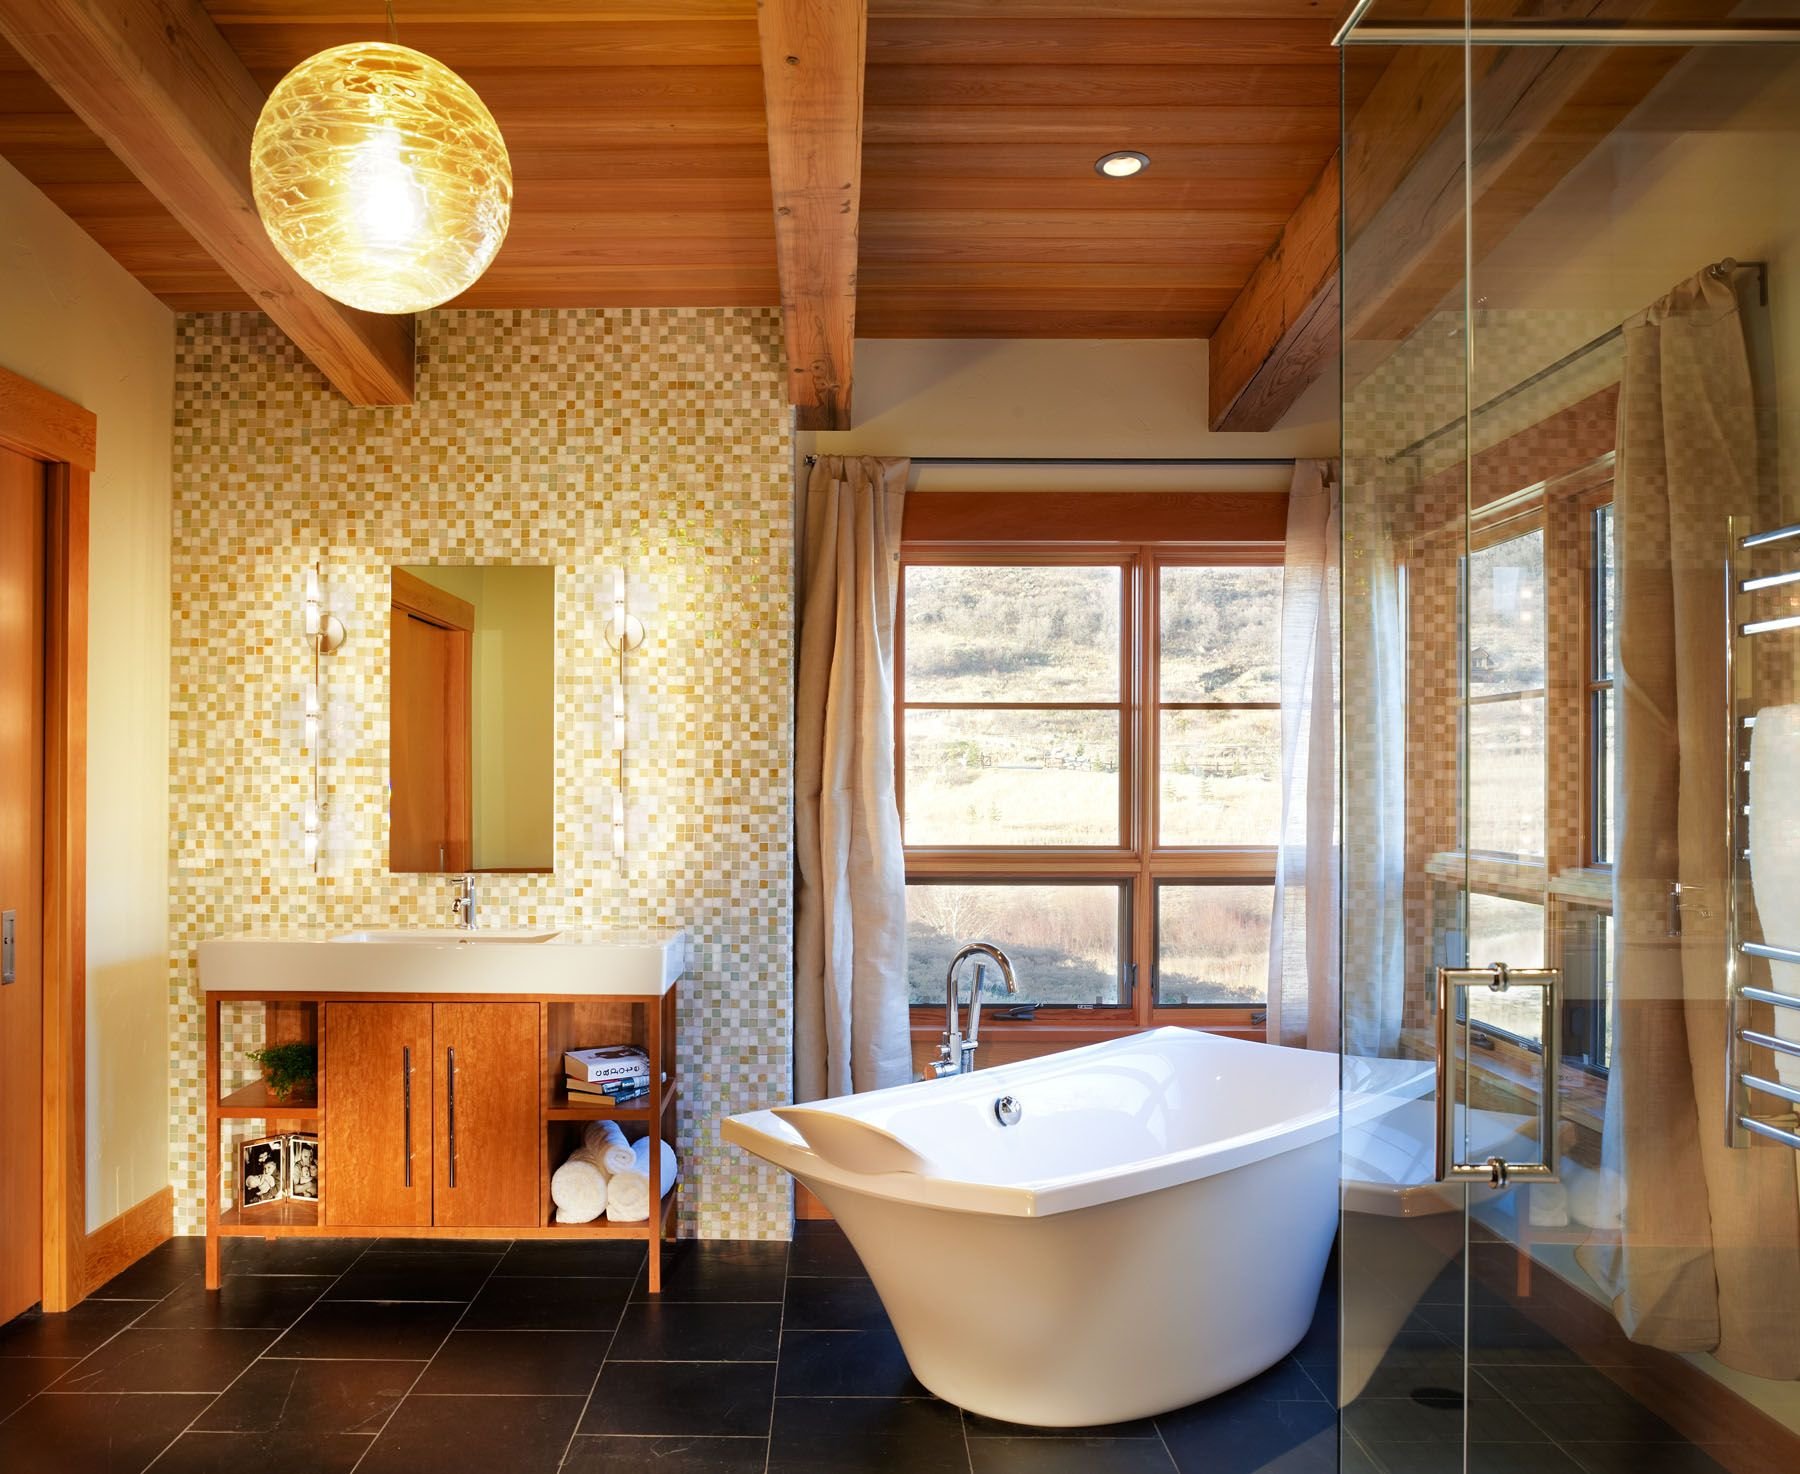 Отделка комнат потолки. Ванная с деревянным потолком. Ванная комната отделанная деревом. Ванная комната в деревянном доме. Ванная комната с деревянным потолком.